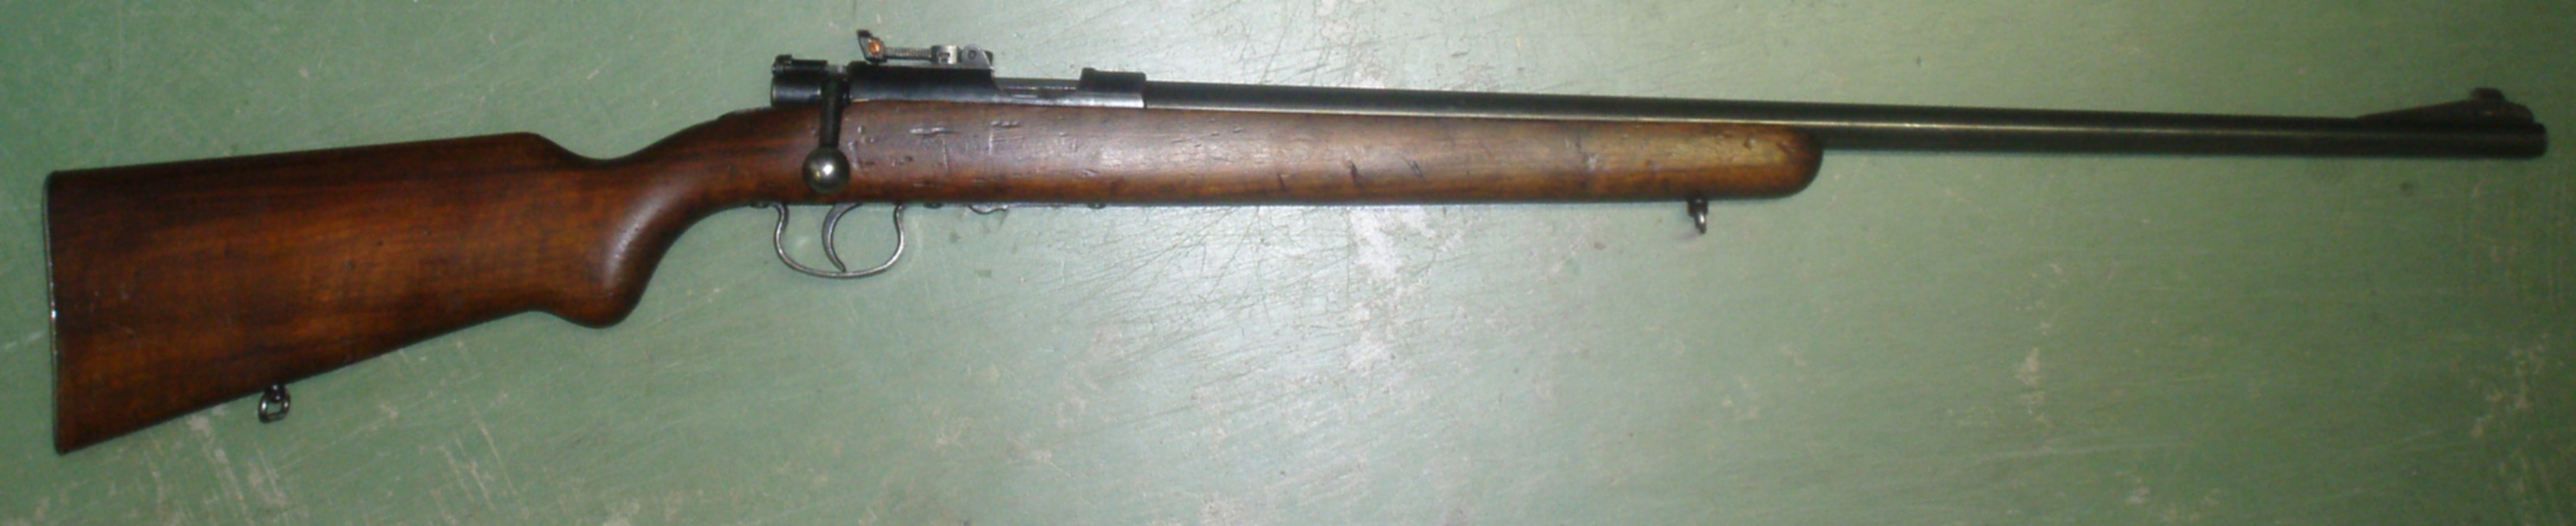 Mauser Mle 45 A